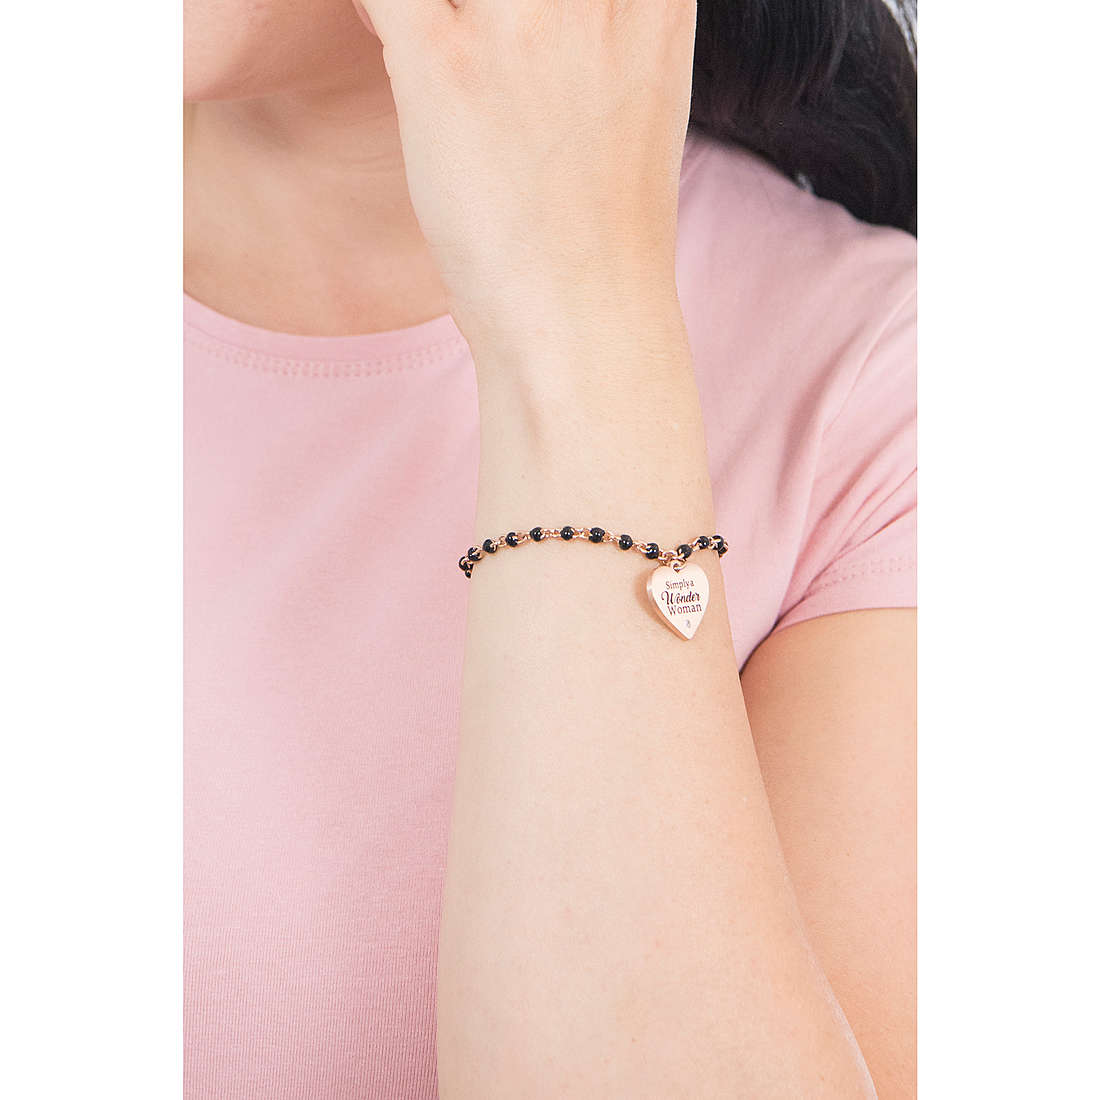 Kidult bracelets Love woman 731821 wearing